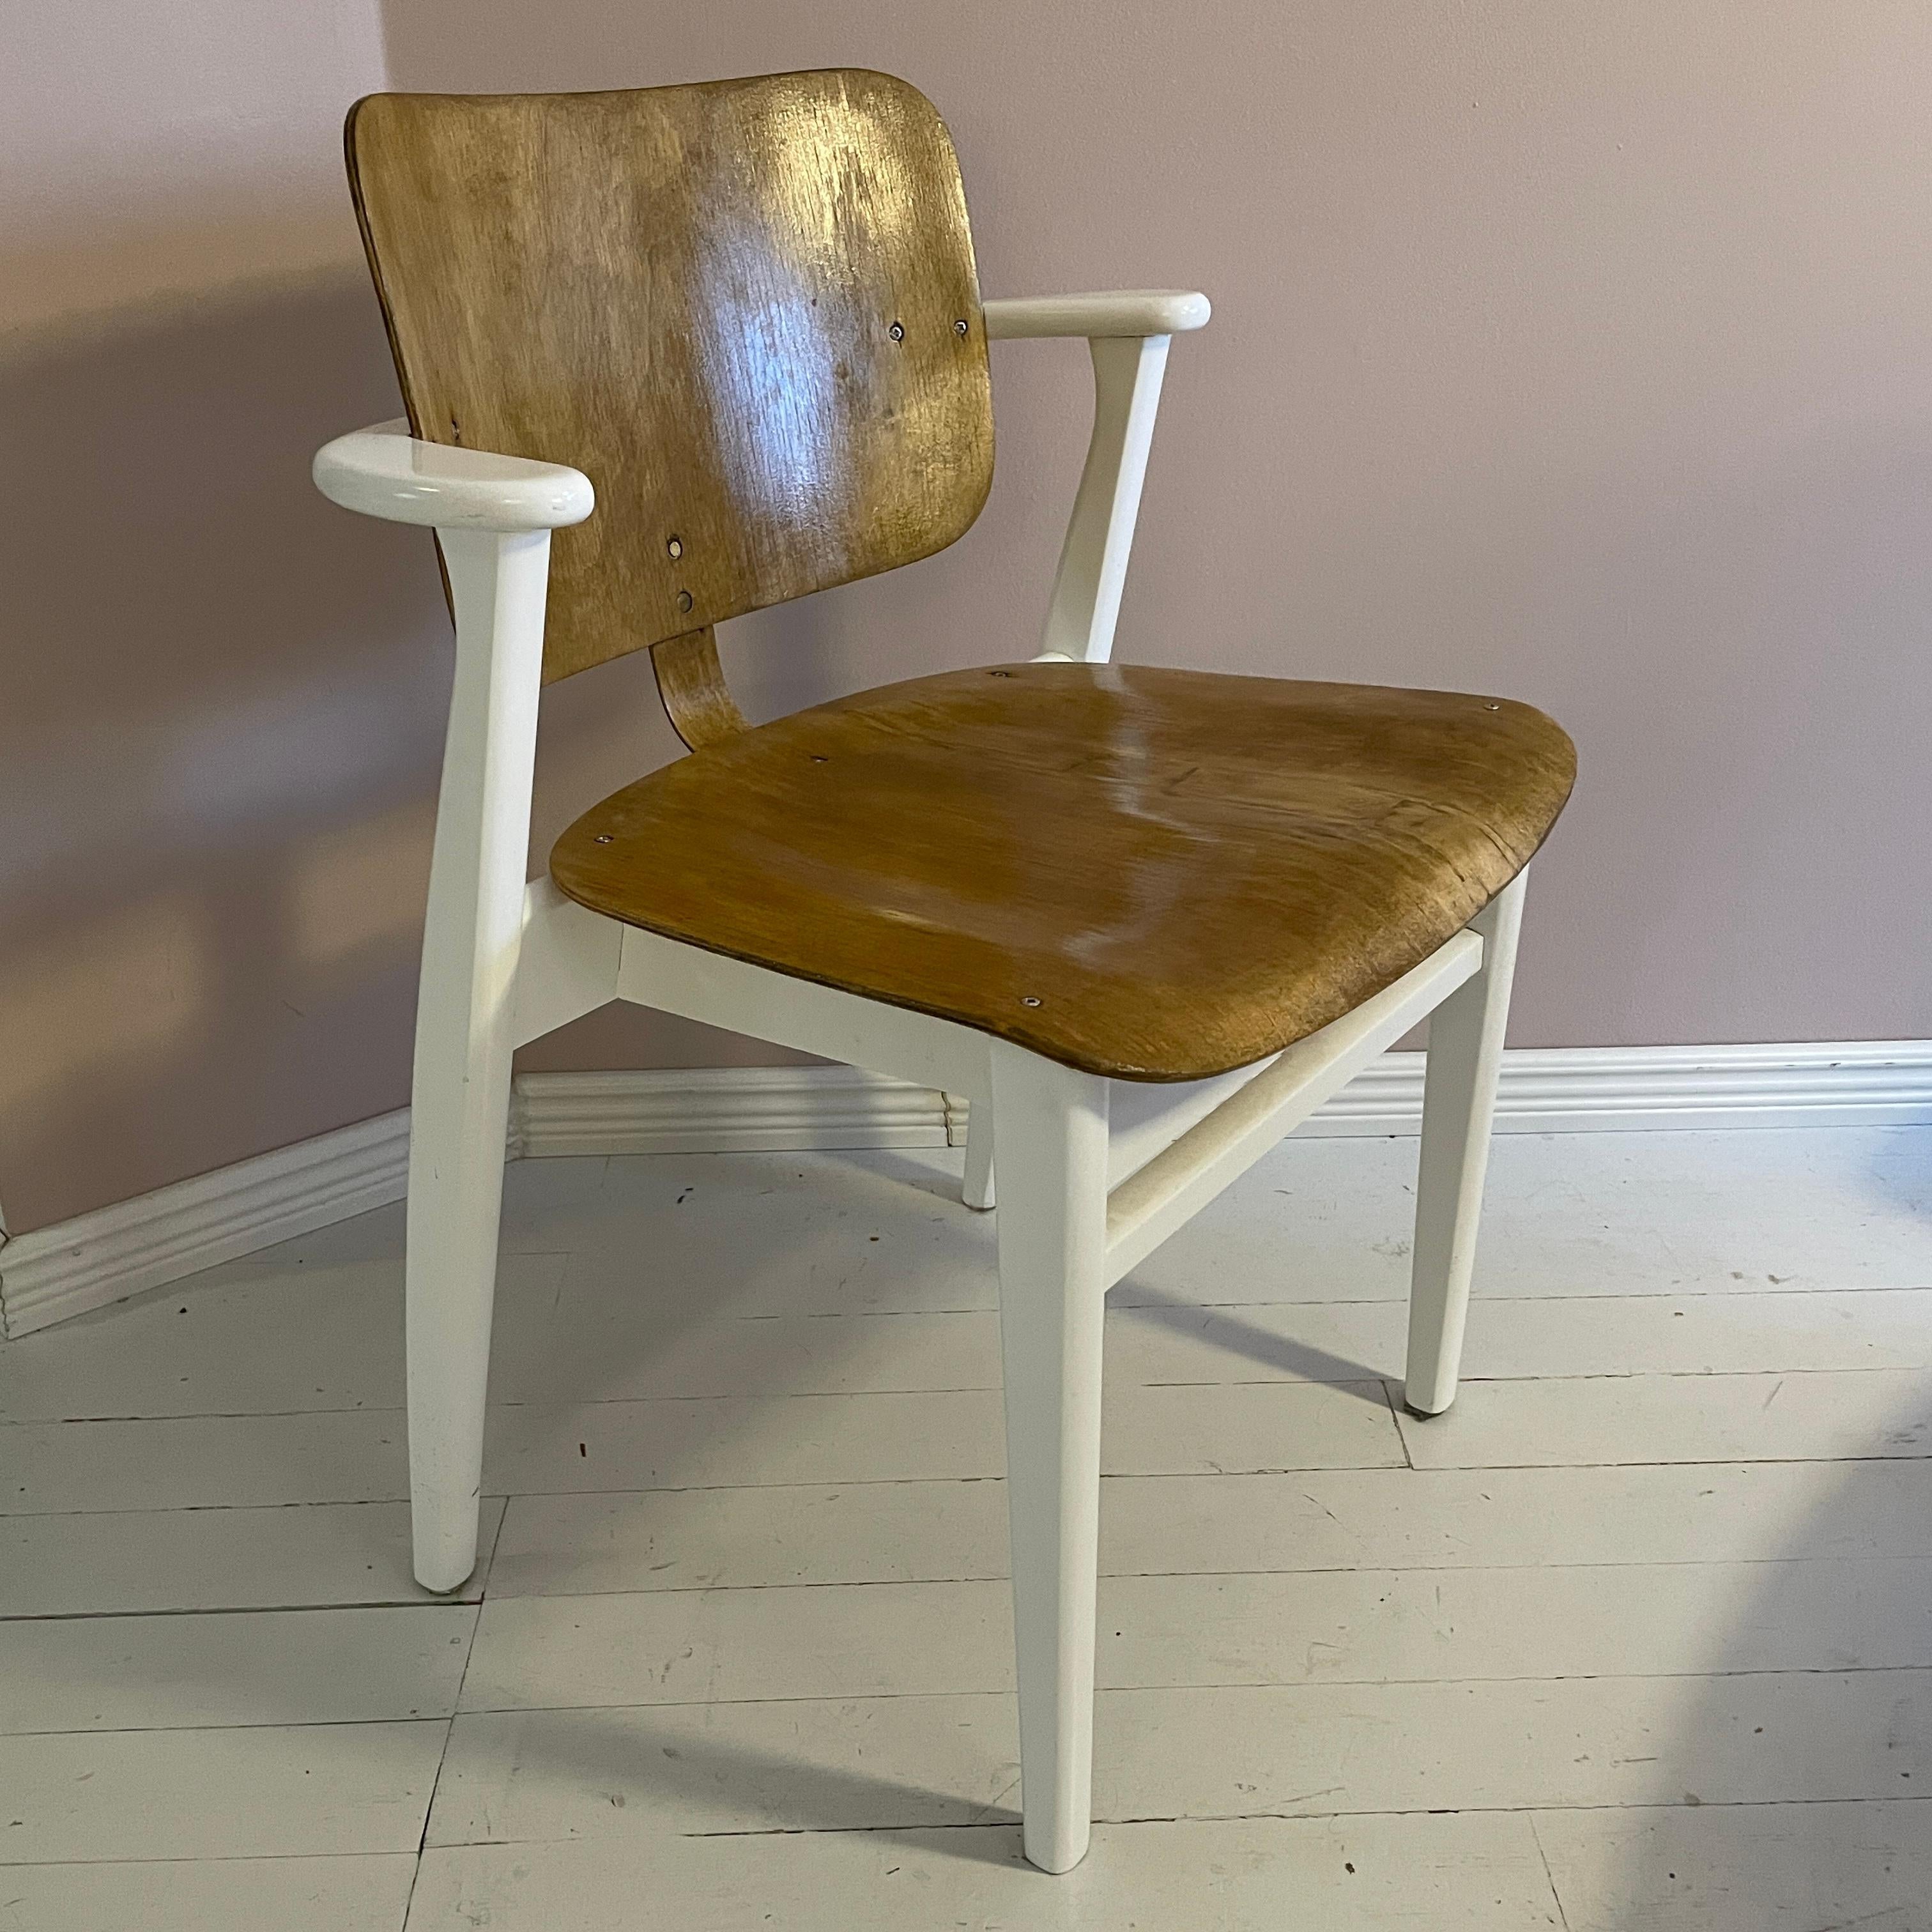 La chaise Domus a été conçue par l'architecte d'intérieur et designer finlandais Ilmari Tapiovaara en 1946. La chaise a été conçue pour le complexe de logements étudiants Domus Academica, situé à Helsinki en Finlande.
La chaise Domus a connu un